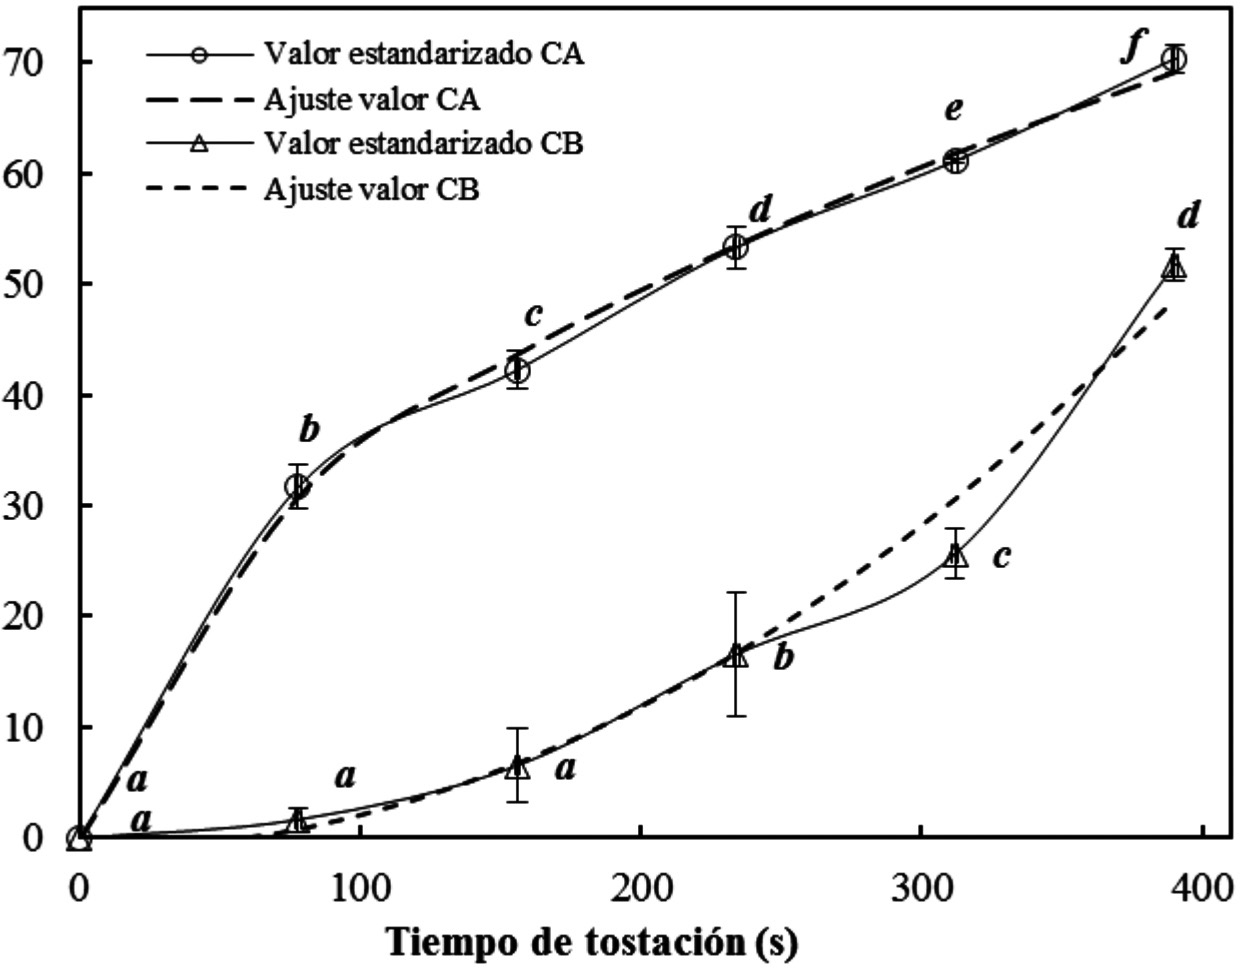 Interpretación del grado de modificación del maíz por influencia del tiempo de tostación sobre la cantidad de agua eliminada (CA) y la consistencia Bostwick (CB). Letras diferentes en las curvas denotan diferencias significantes entre niveles de tiempo (p ≤ 0.05).